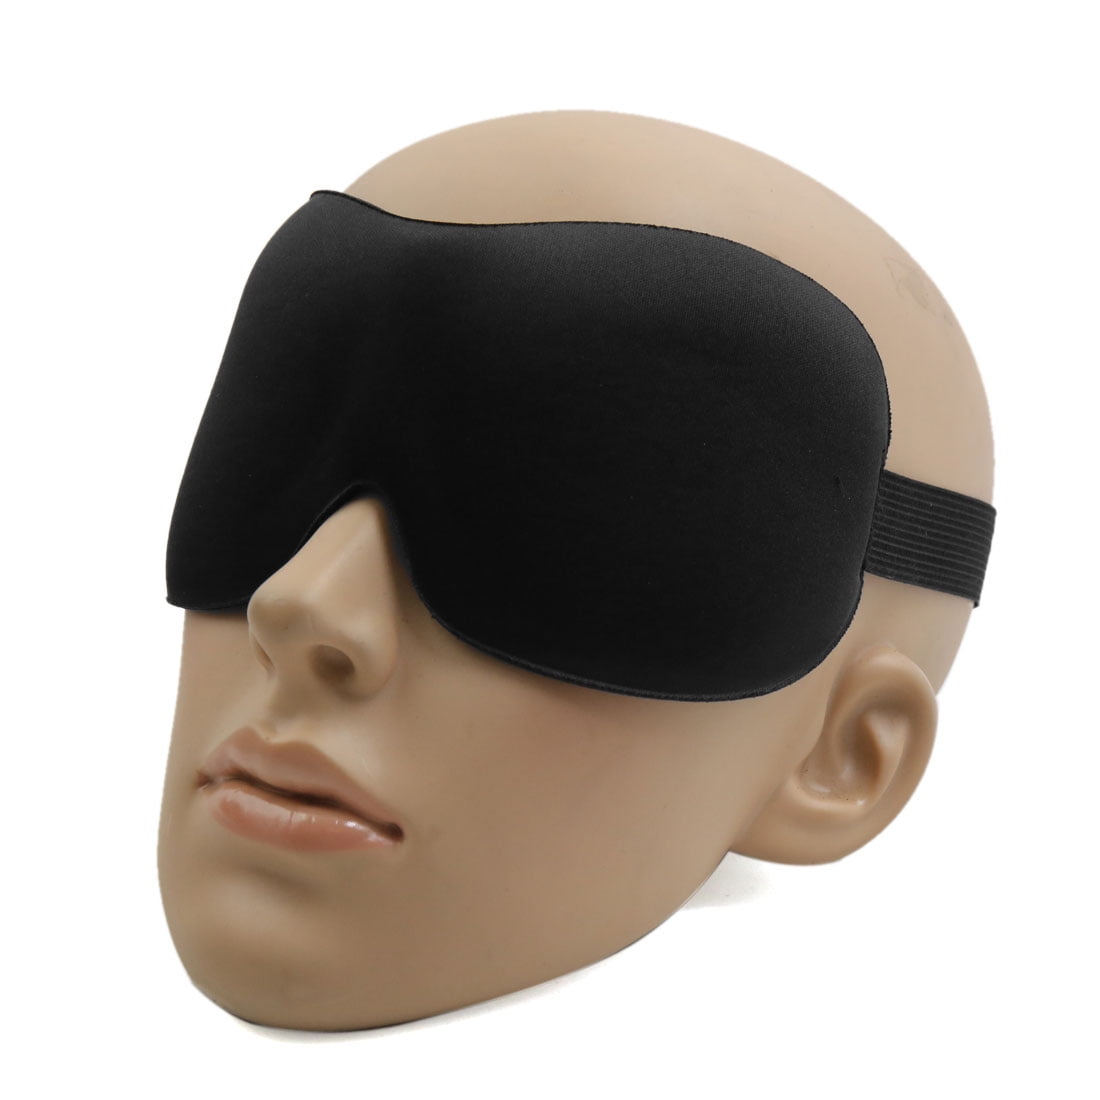 eye mask sleep target